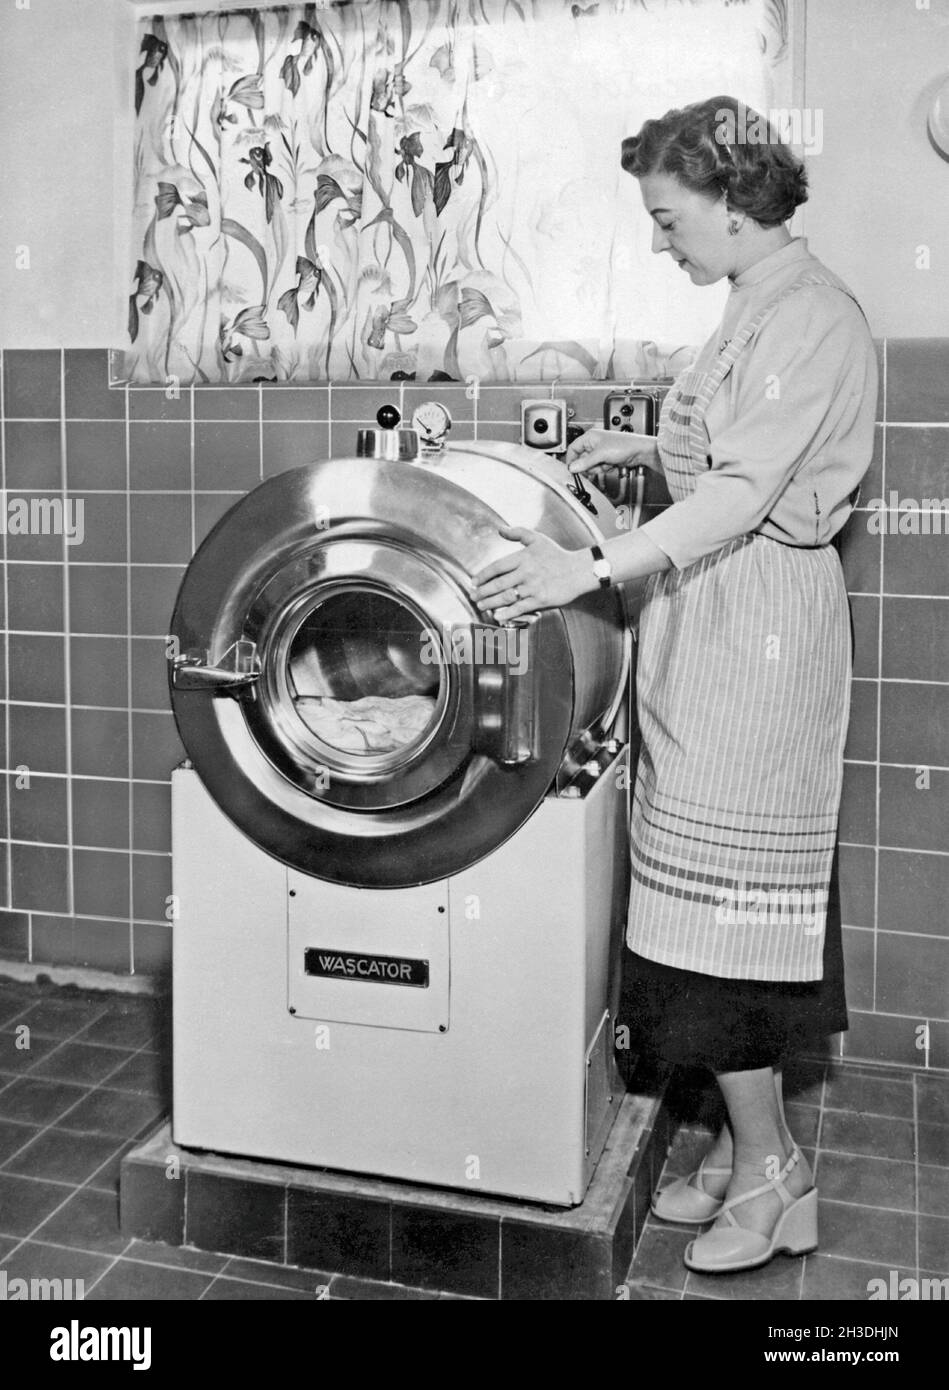 Wäsche waschen in den 1950er Jahren. Eine Dame zeigt die neue Waschmaschine  von ab Wascator Stockfotografie - Alamy